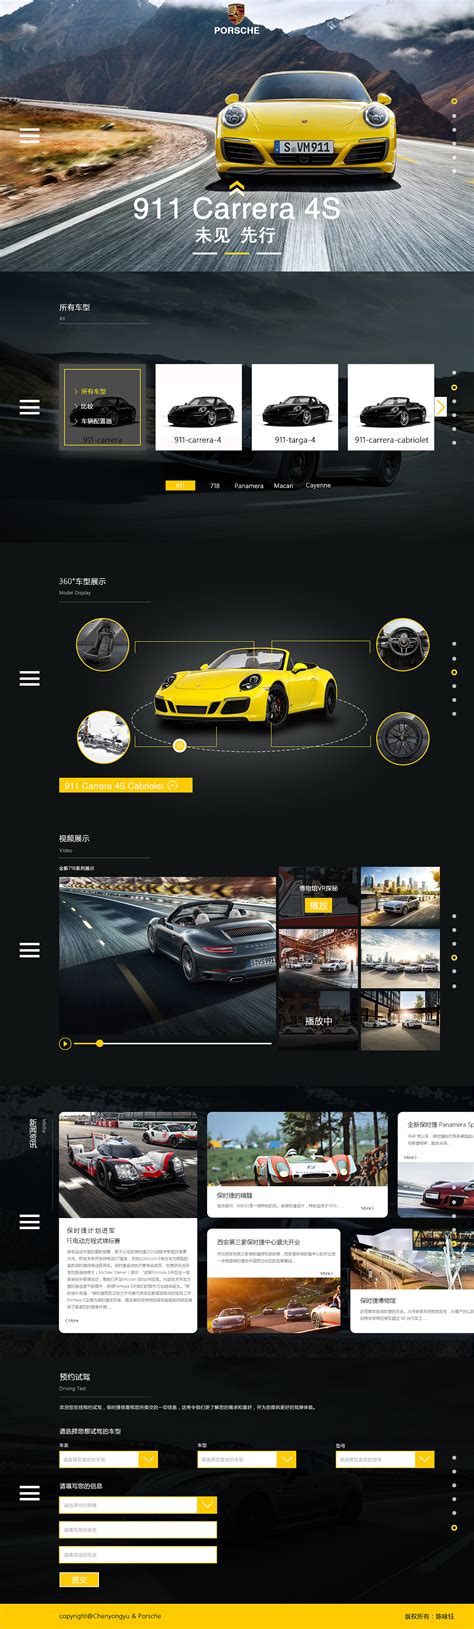 高端网站设计优秀案例欣赏——汽车网站设计